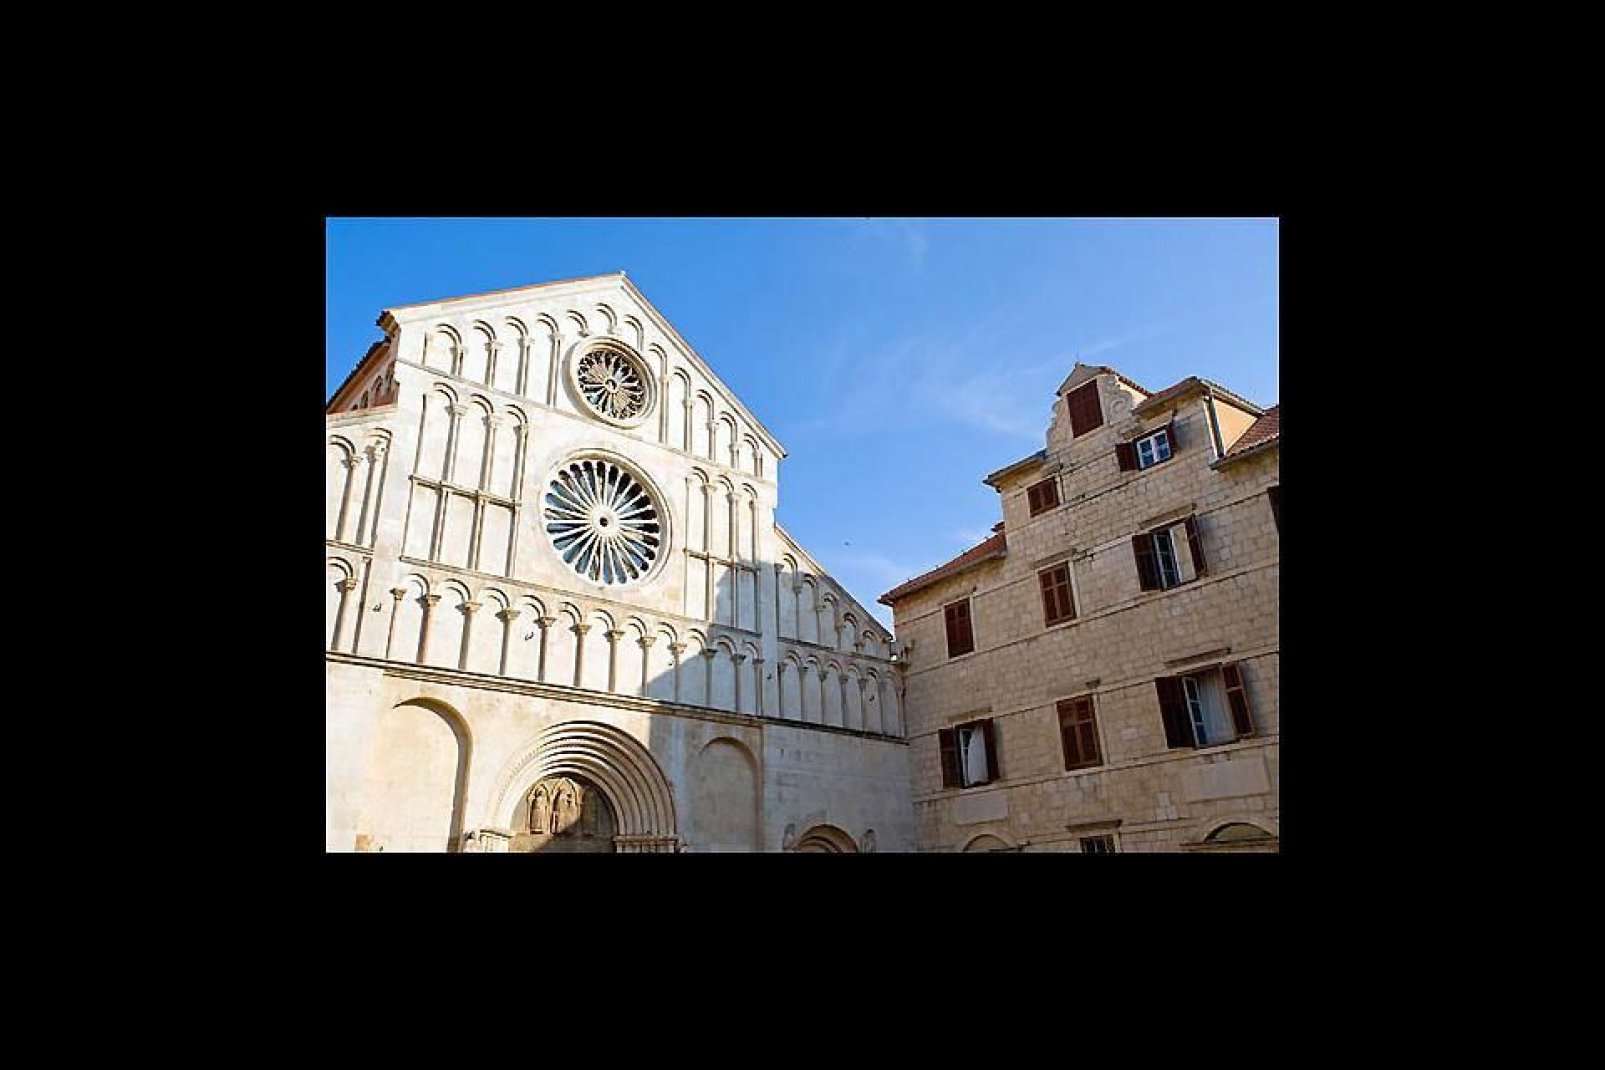 La iglesia de Santa María está ubicada en el casco antiguo, justo enfrente de la iglesia de San Donato.